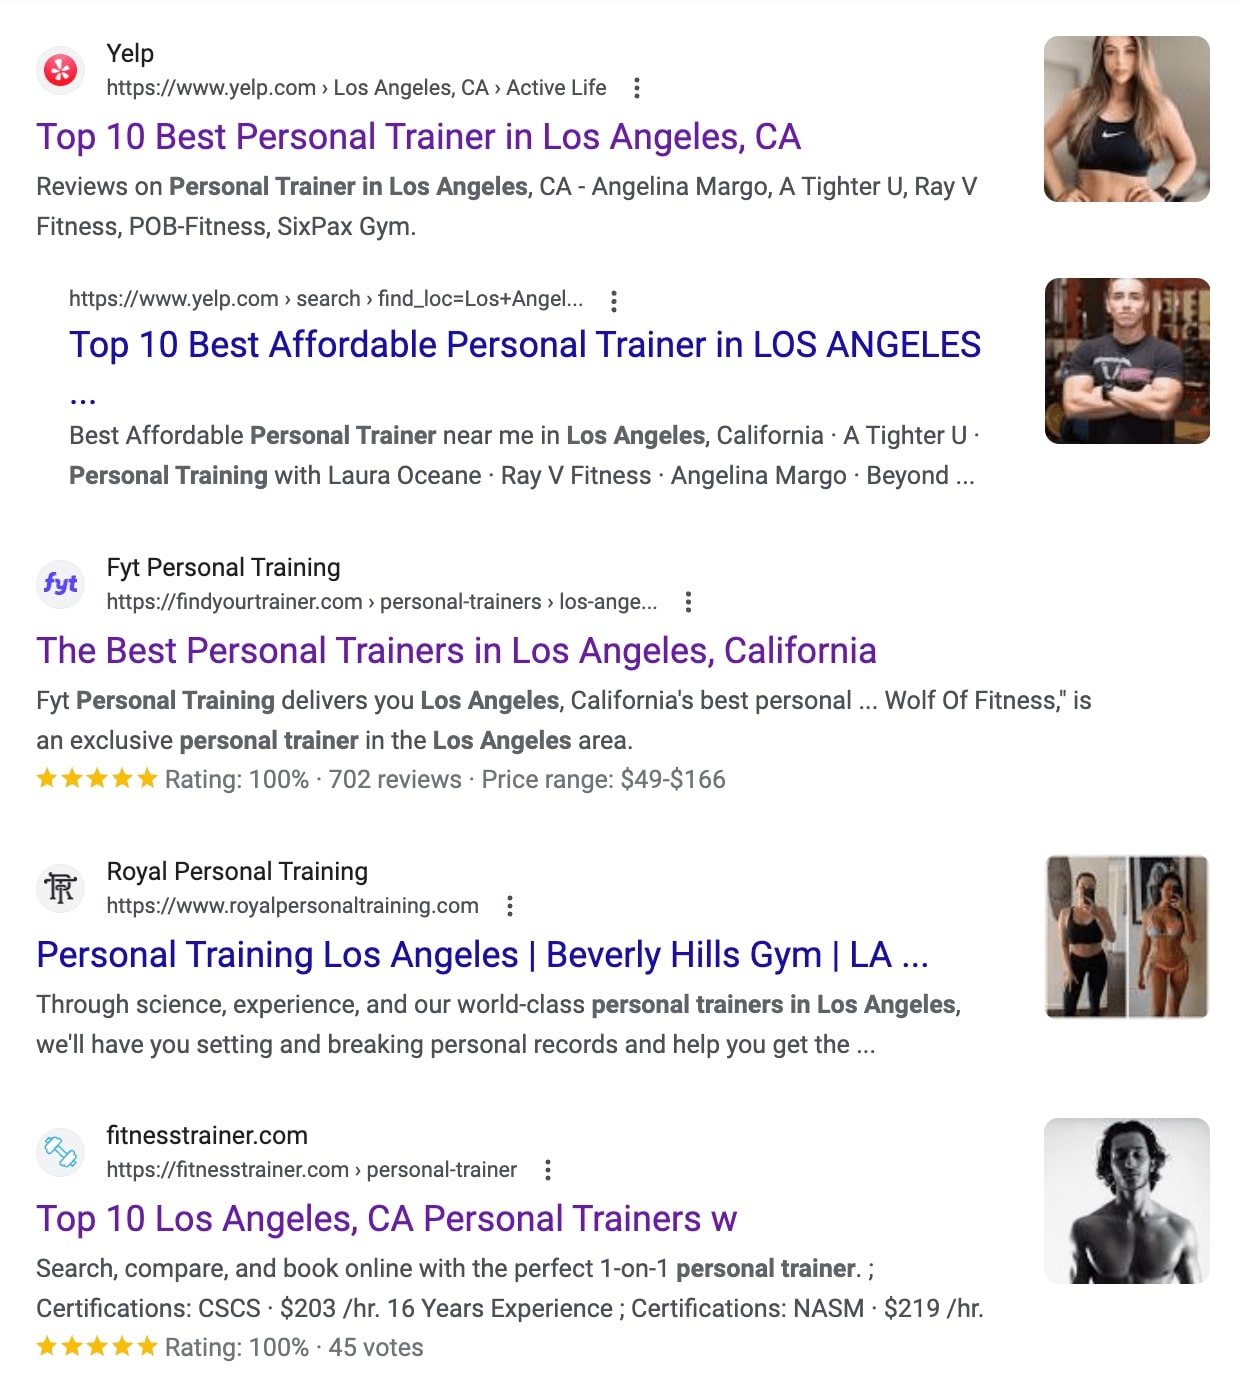 wat is verwijzingsverkeer? top Google zoekresultaten voor “personal trainer in los angeles”